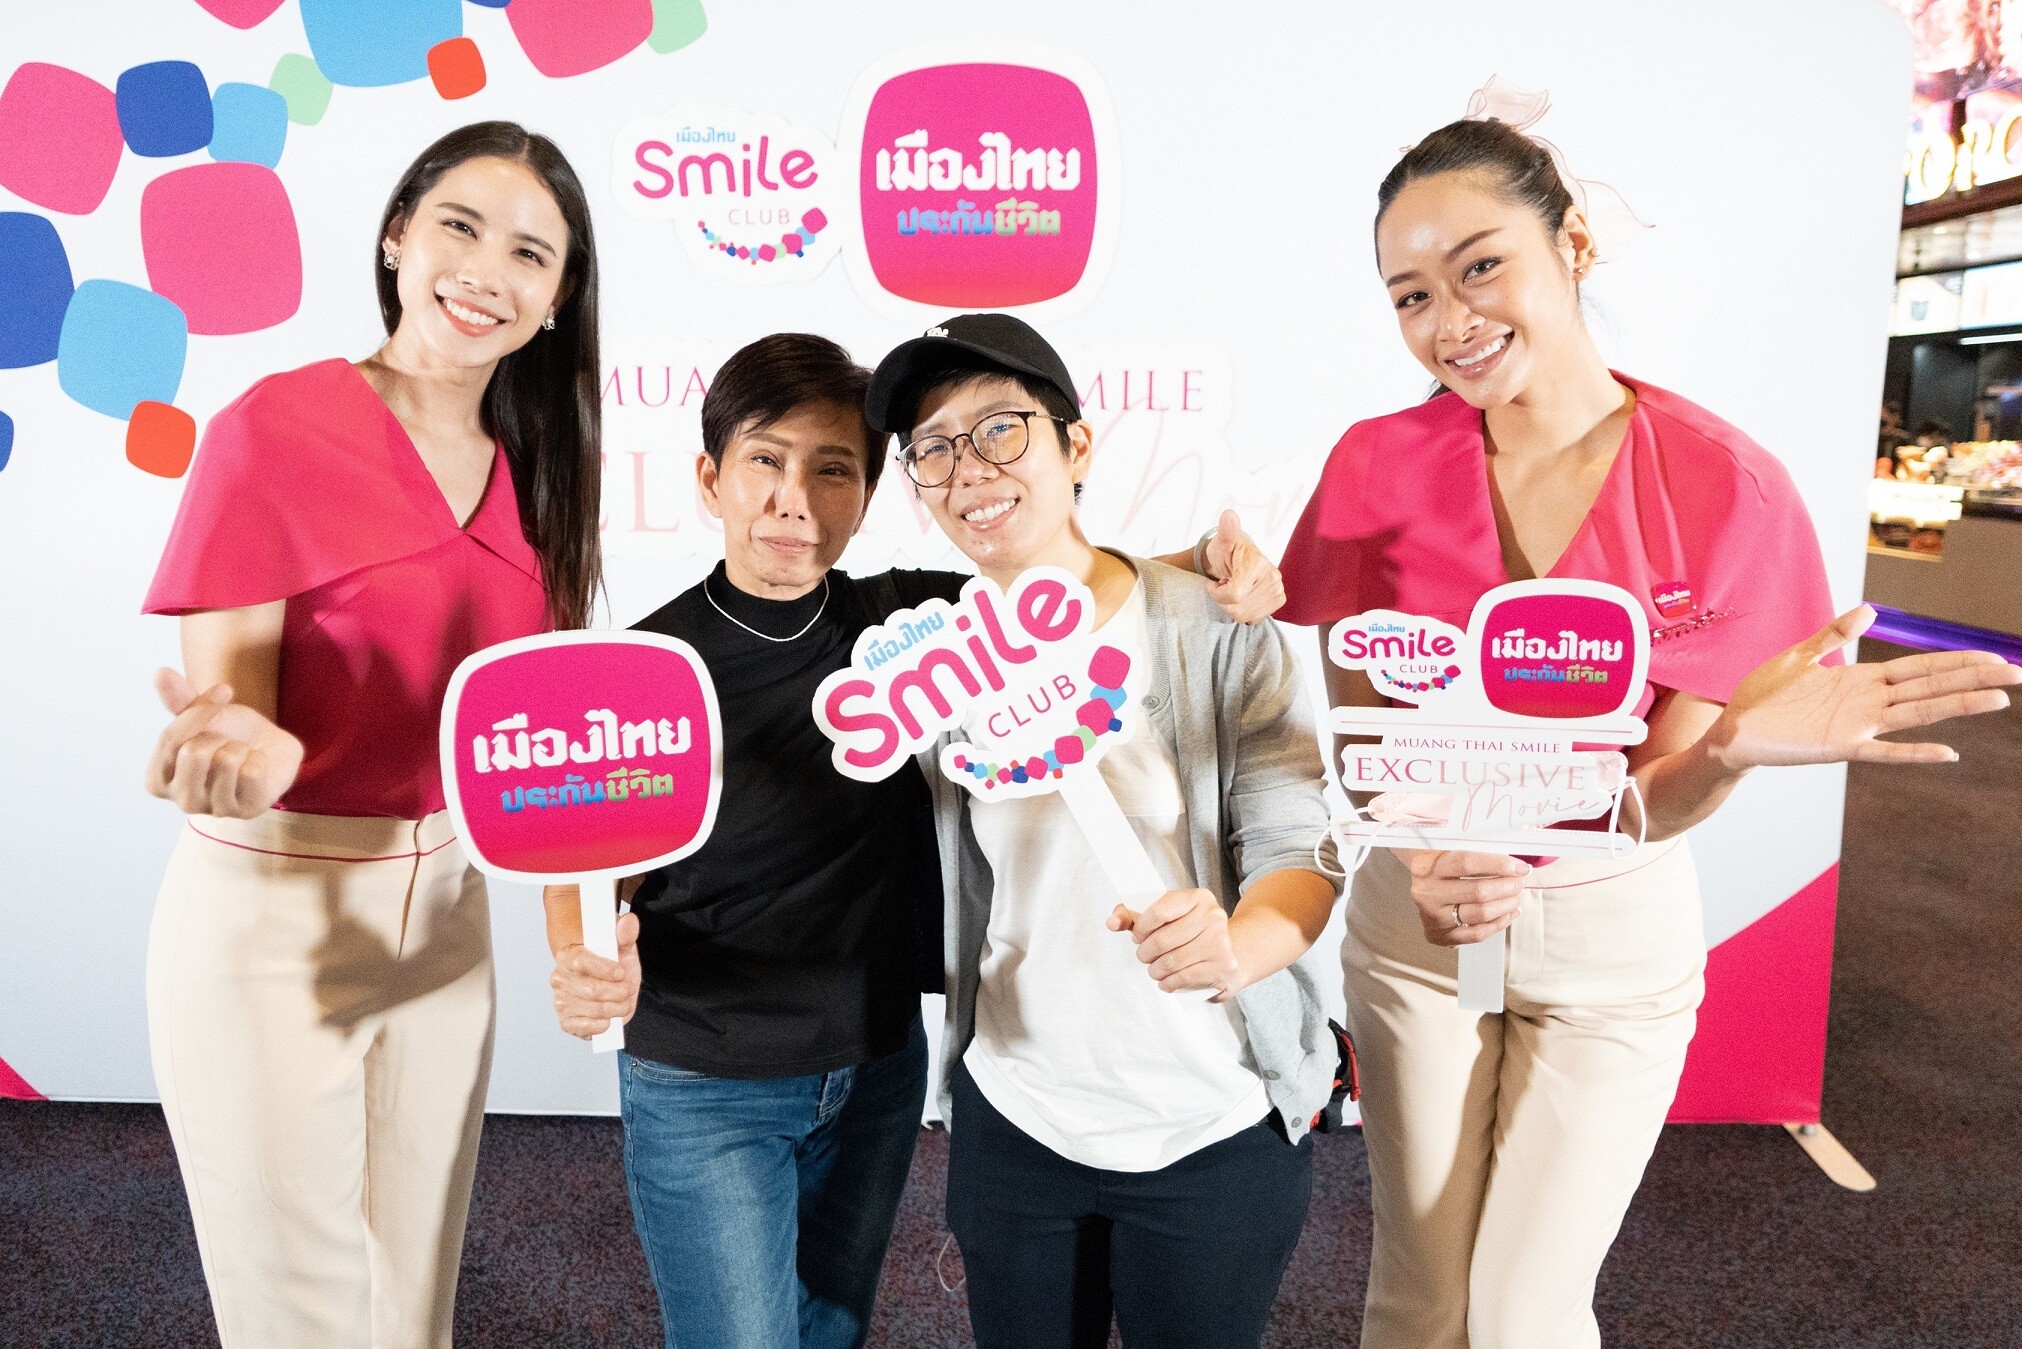 เมืองไทยประกันชีวิต มอบประสบการณ์เหนือระดับสุดเอ็กซ์คลูซีฟ กับกิจกรรม "Muang Thai Smile Exclusive Movie" แก่สมาชิกเมืองไทยสไมล์คลับ